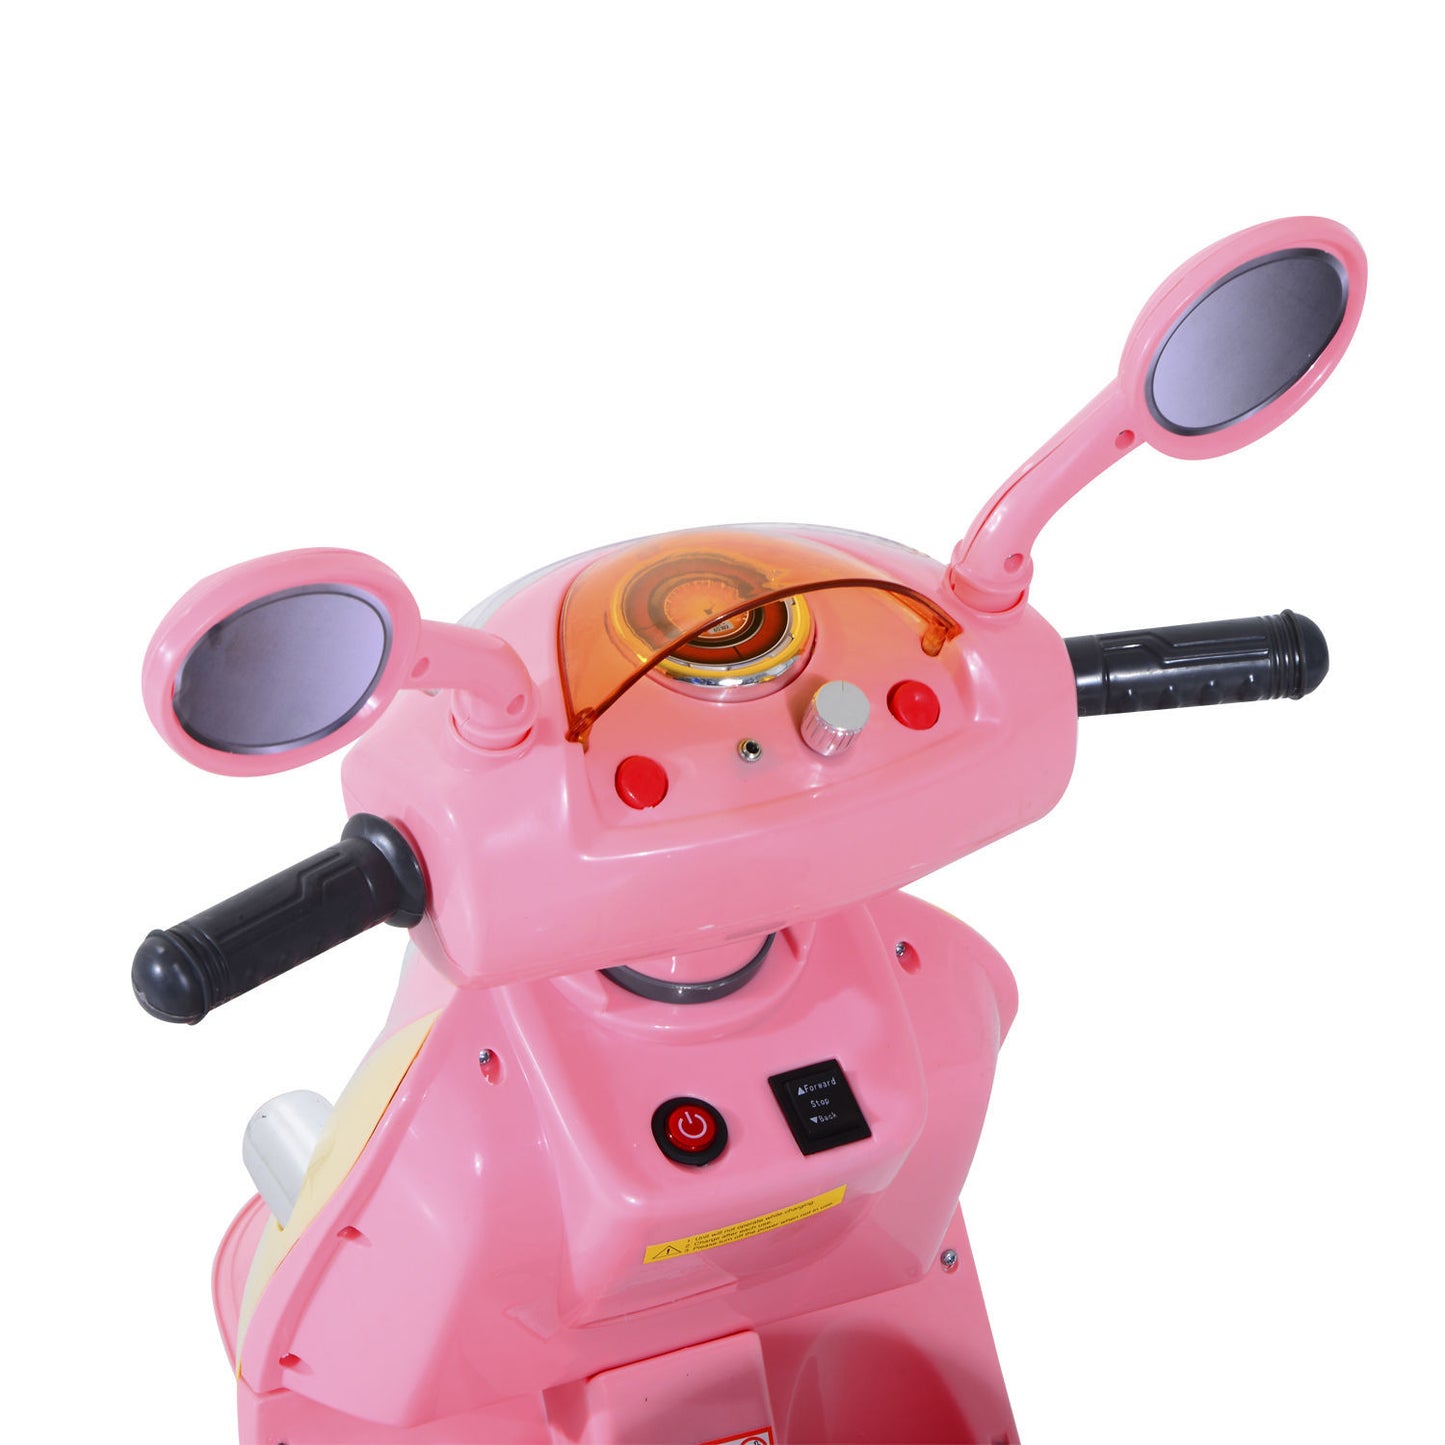 Moto électrique pour enfants Nancy's Cay Corker - Rose, Jaune - L108 x L51 x H75 cm